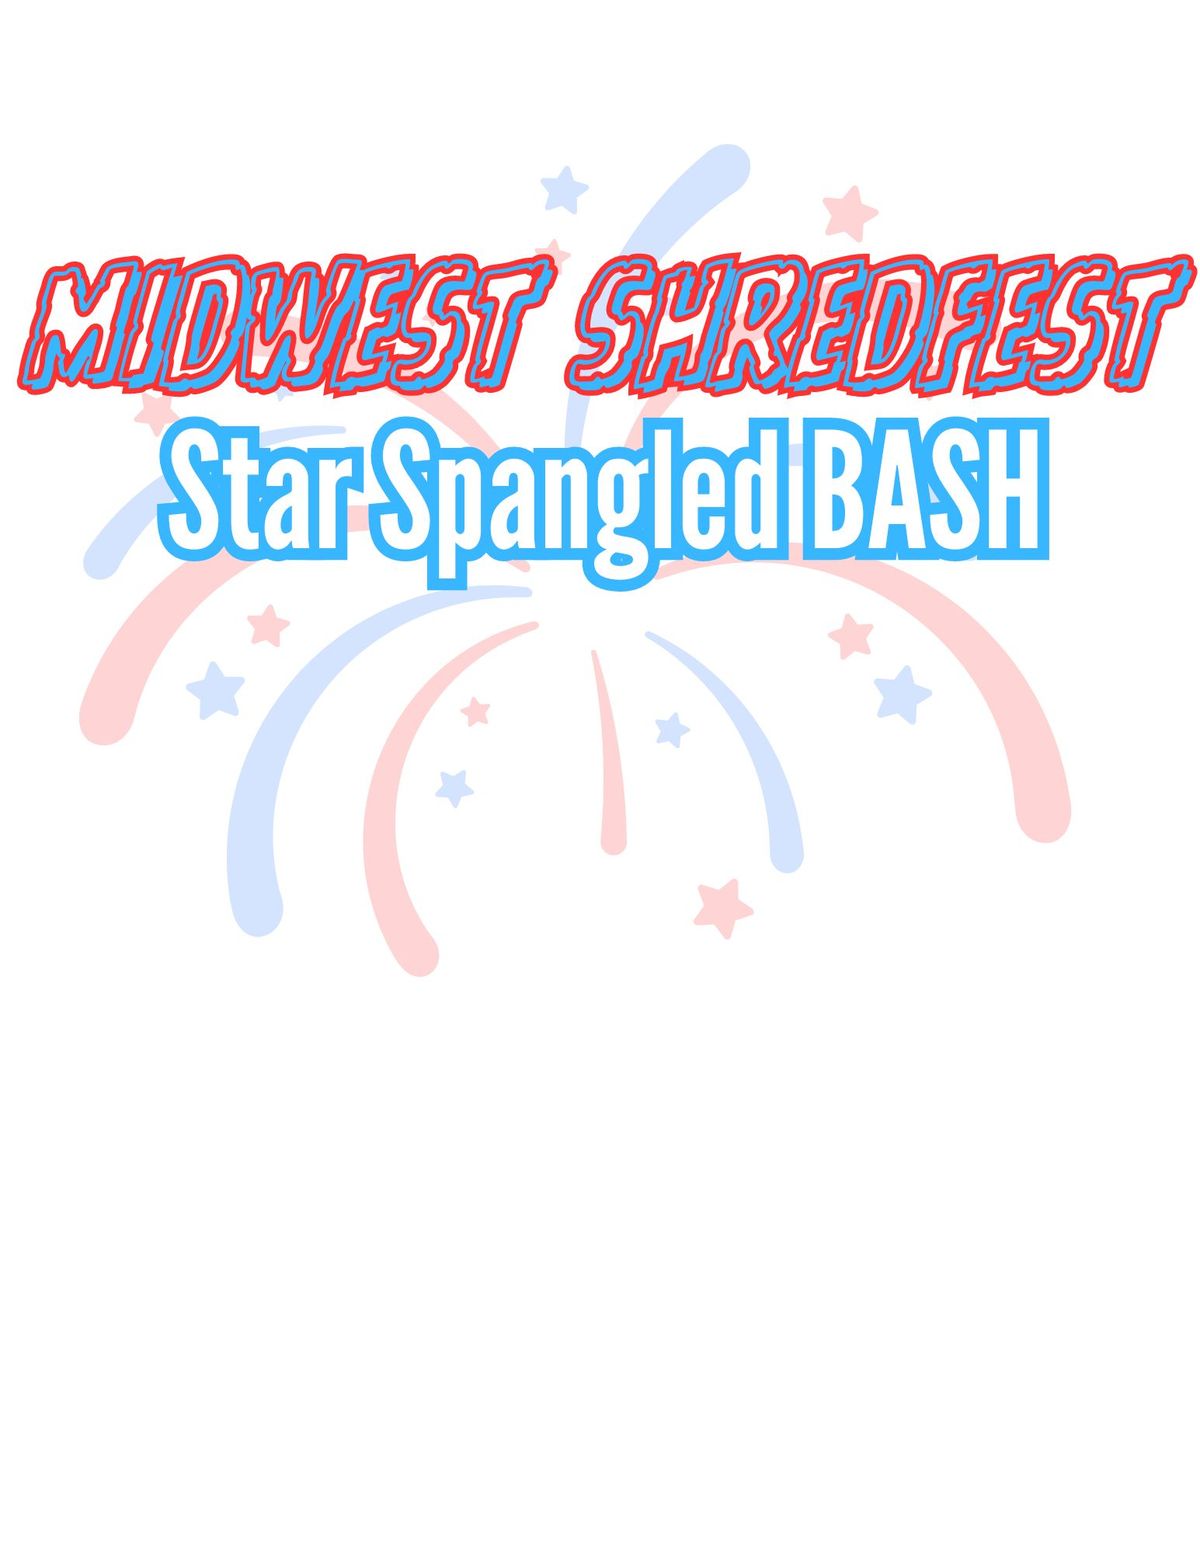 Star Spangled Bash